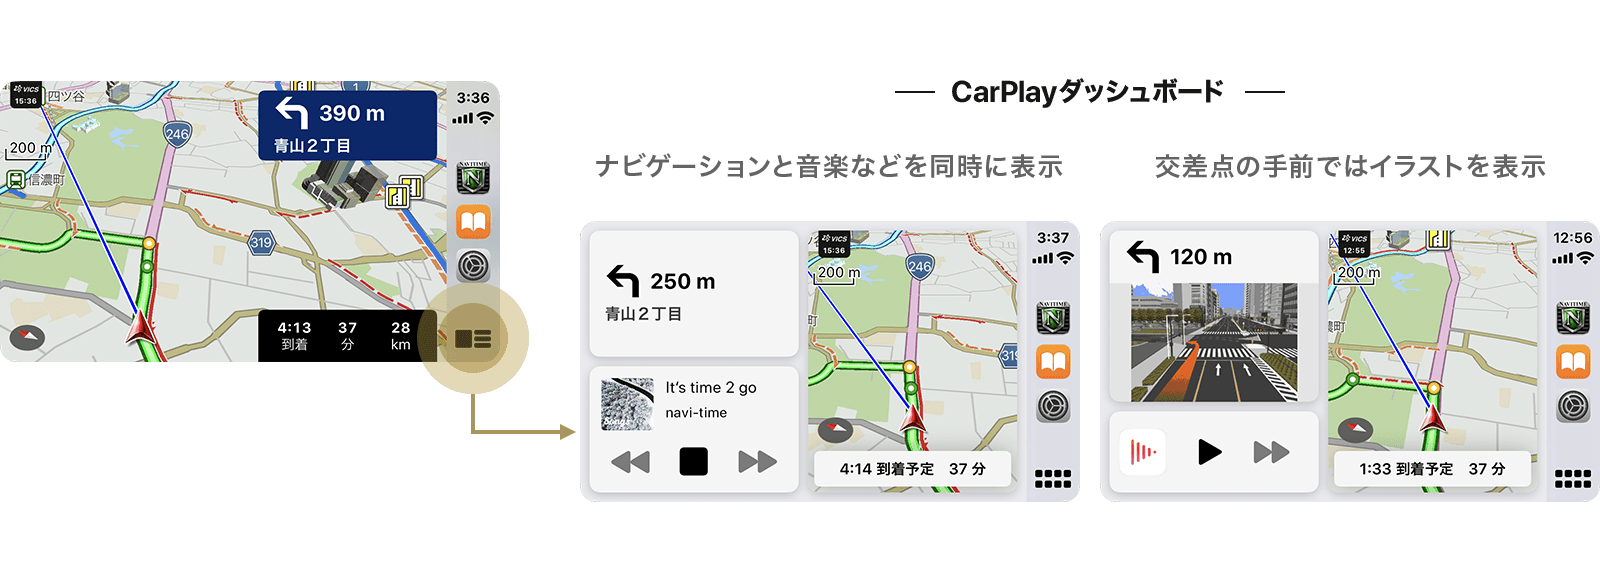 カーナビアプリ｢カーナビタイム｣が｢Apple CarPlay ダッシュボード｣に対応